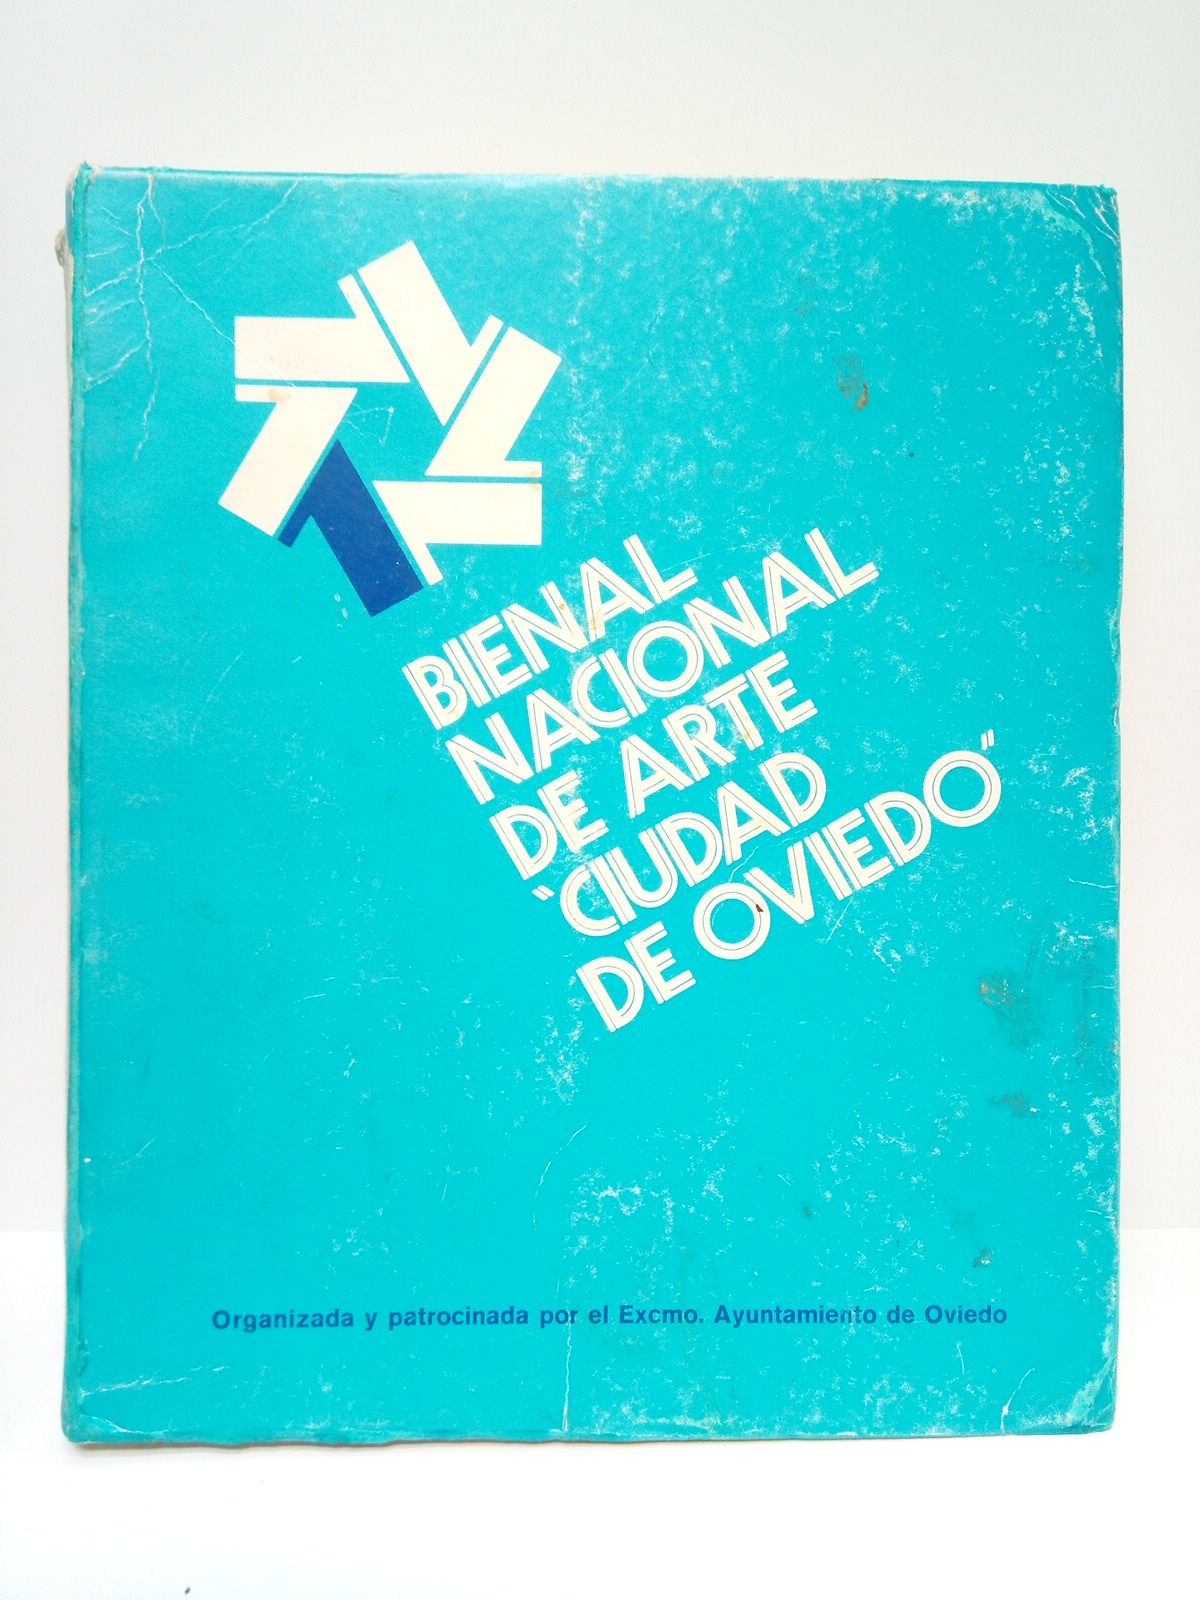 AYUNTAMIENTO DE OVIEDO - Bienal nacional de arte 